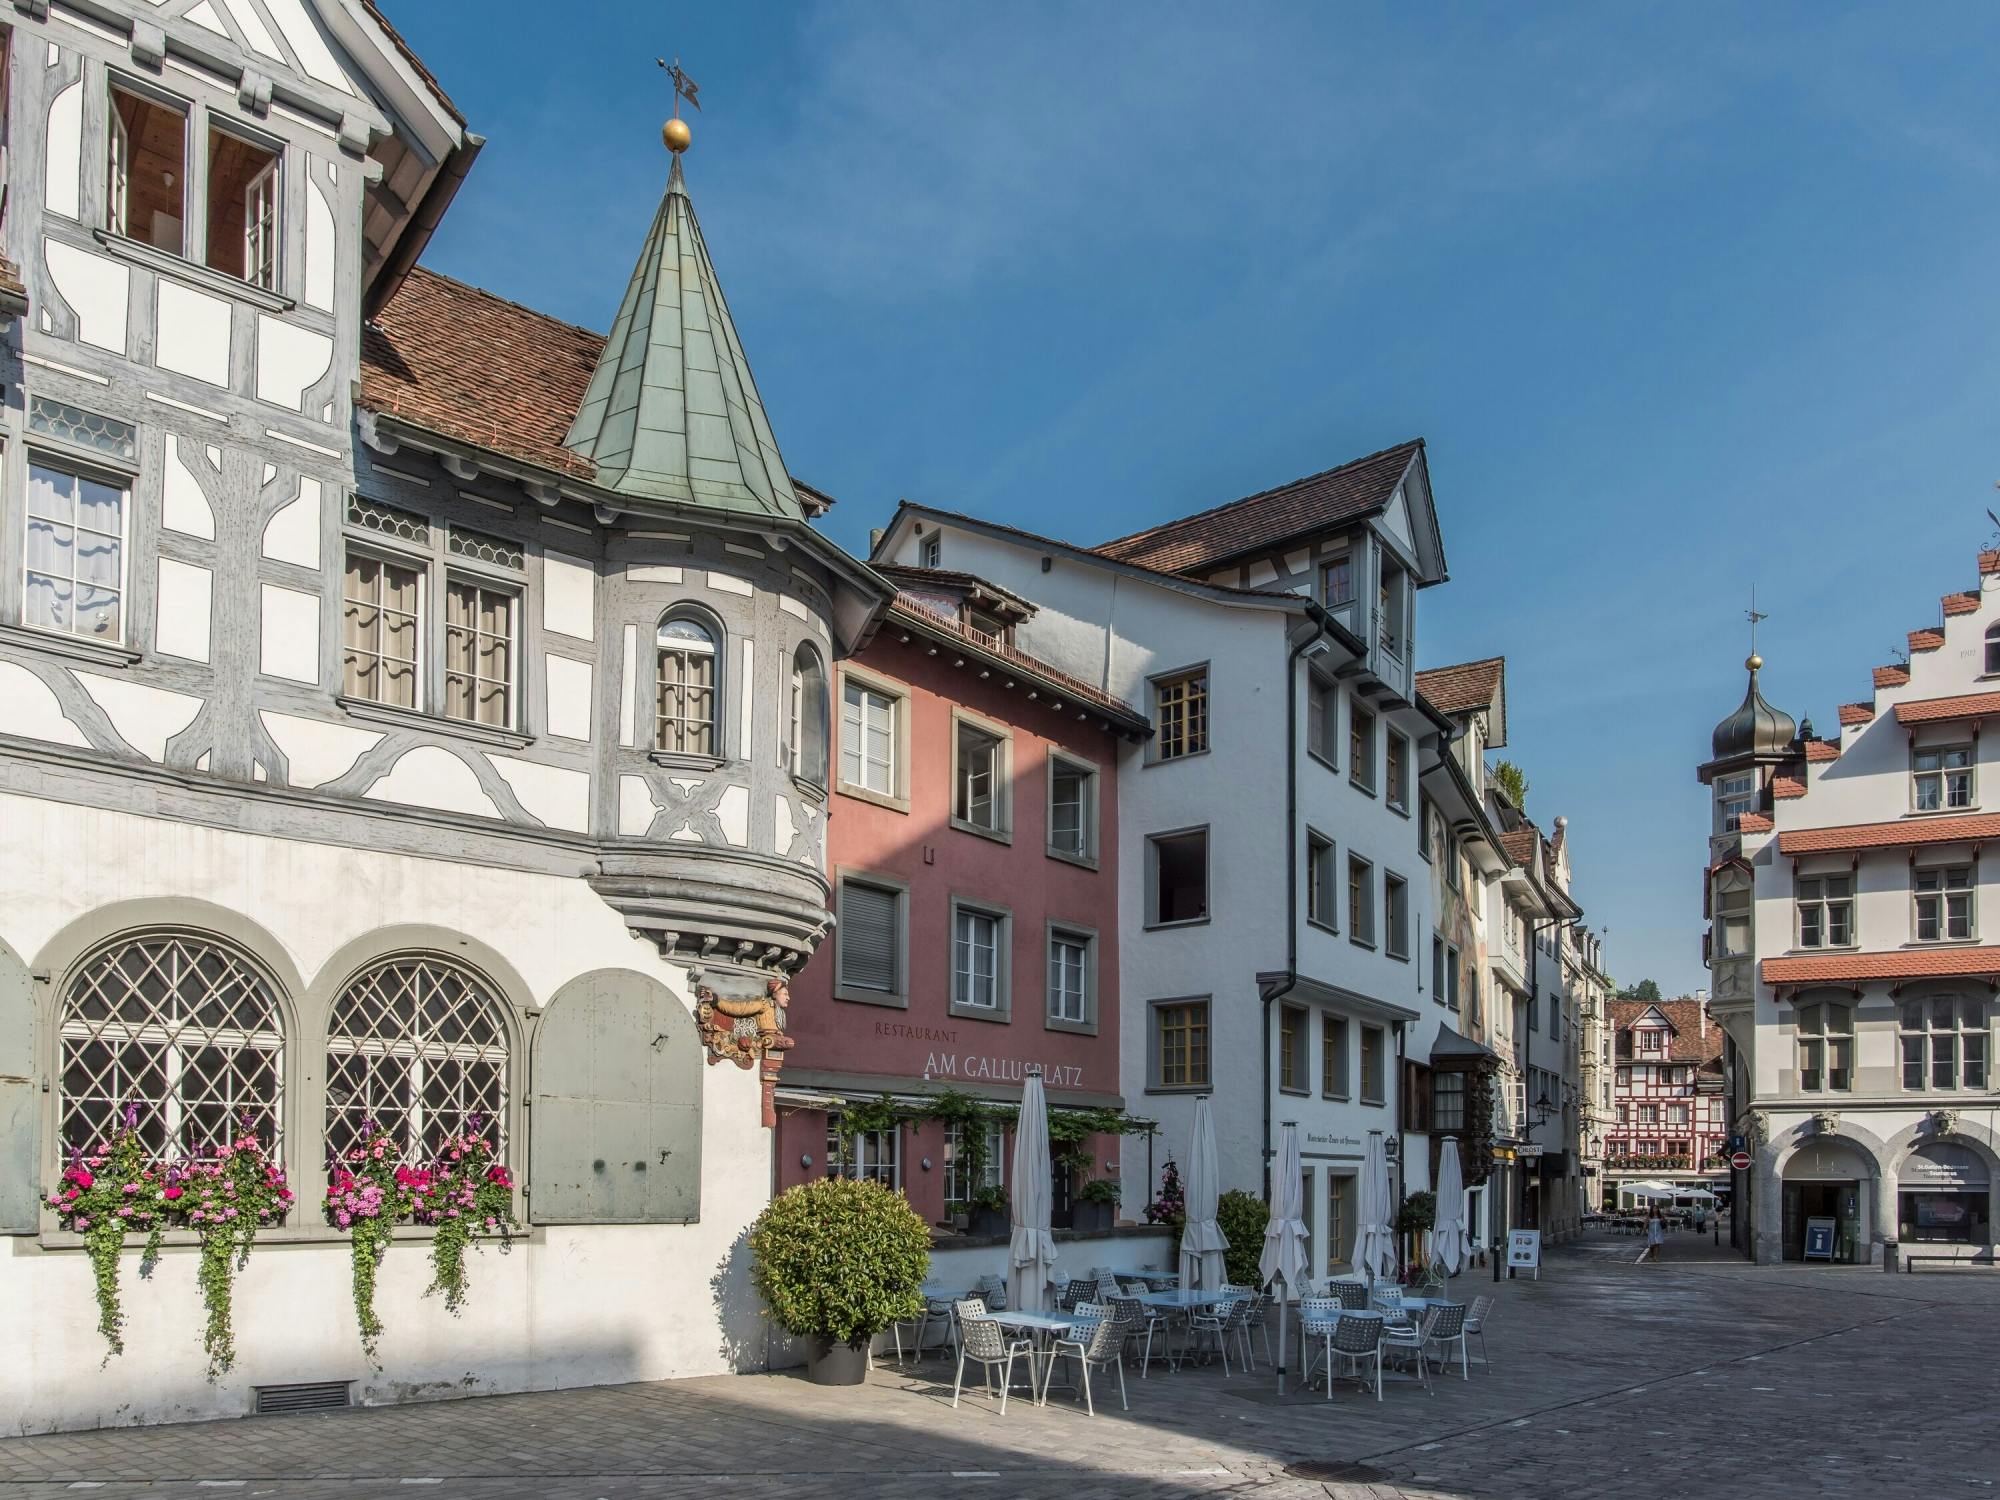 Passeio a pé pela cidade velha de St.Gallen